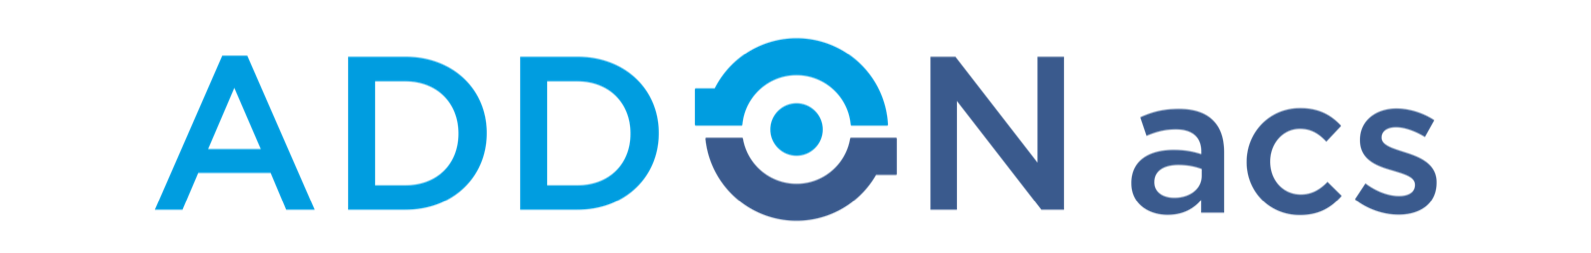 logo bleu n.png